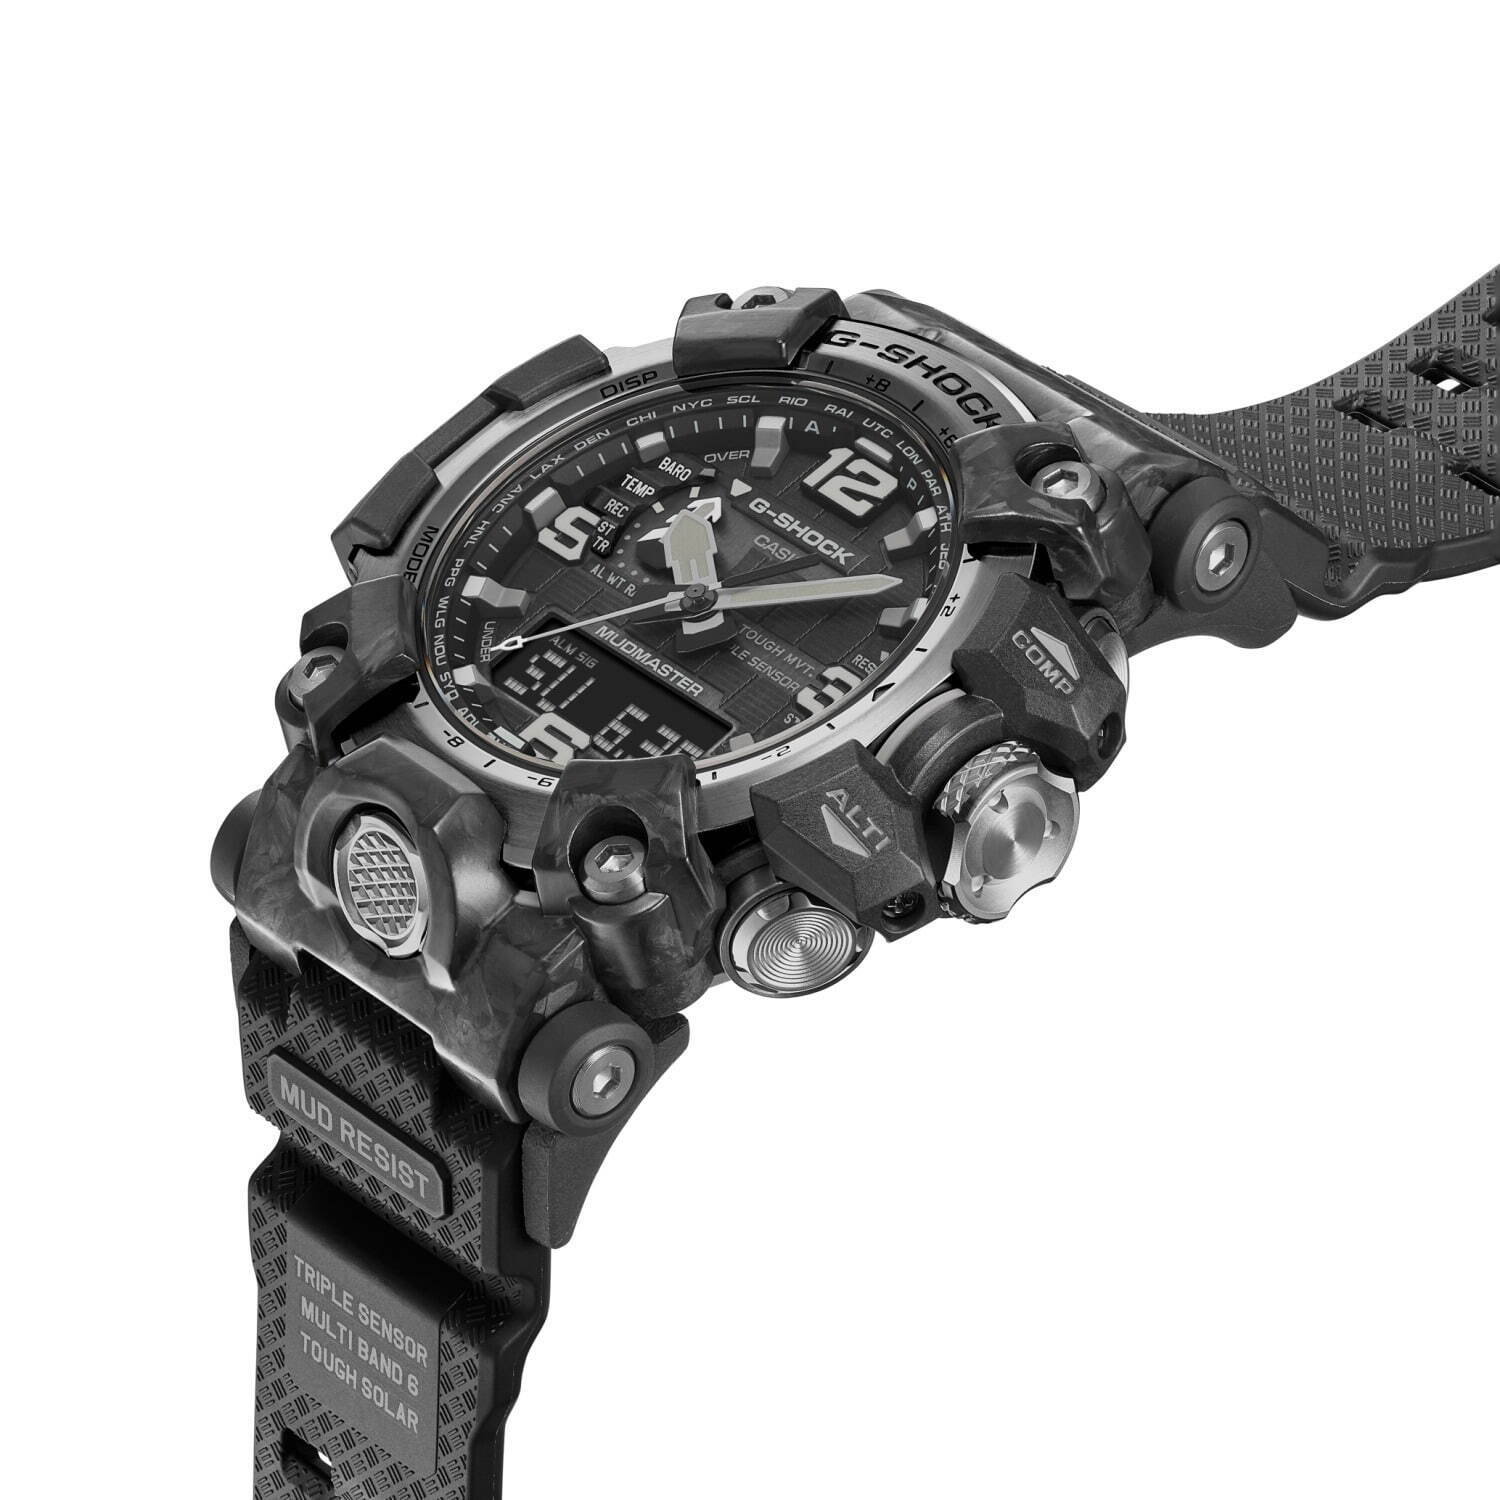 G-SHOCKの高機能腕時計「マッドマスター」が小型化、“極太”短針＆大型